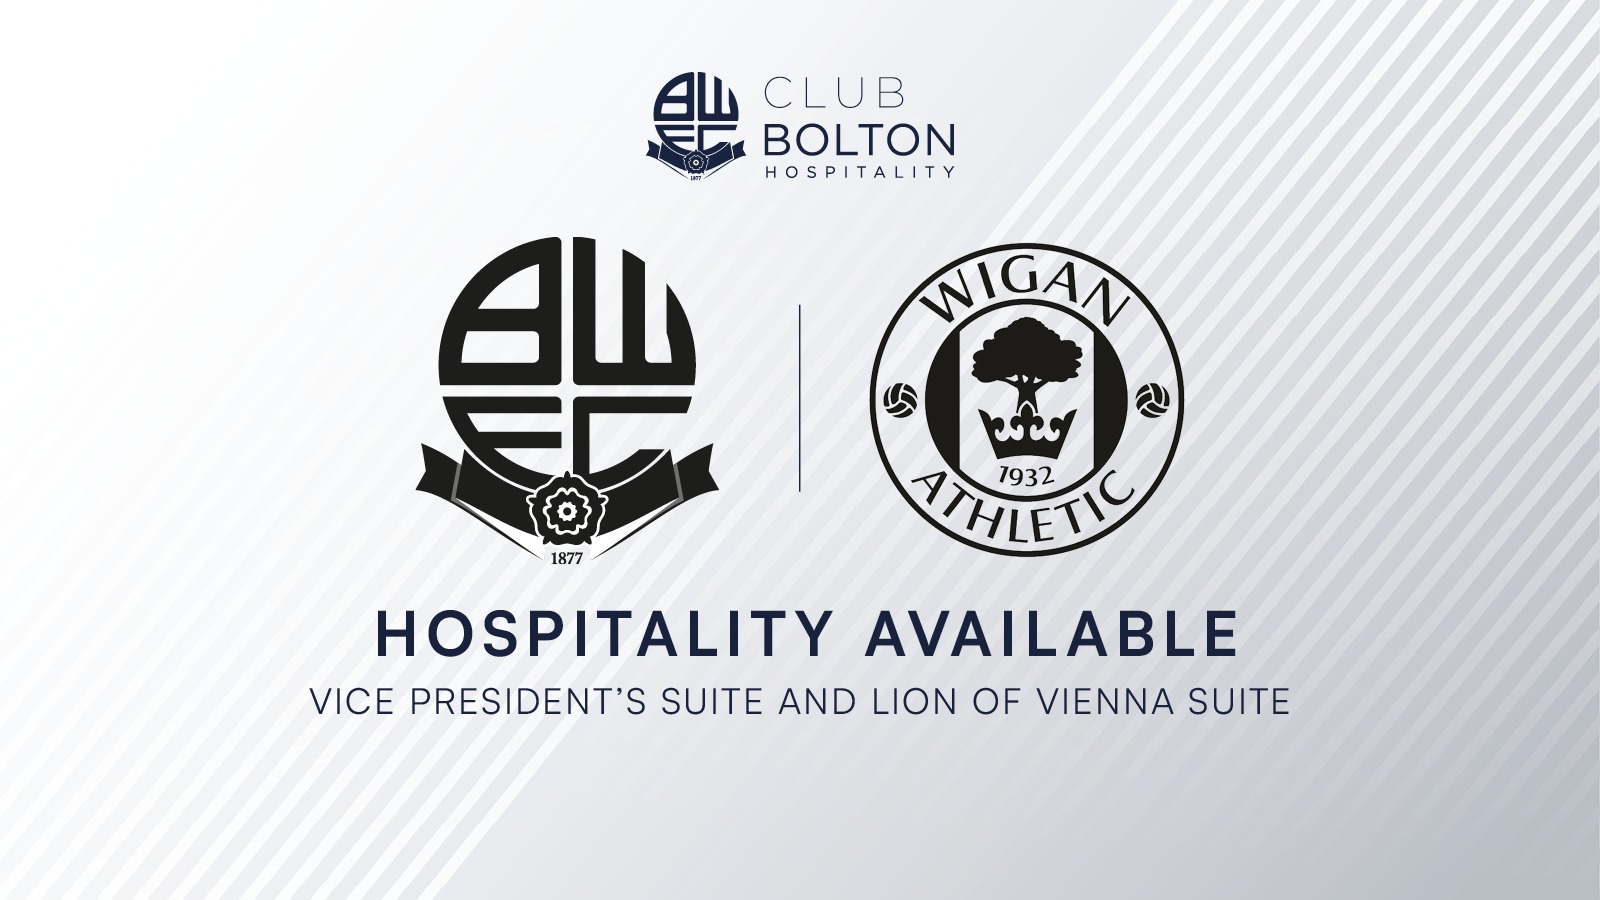 Club Bolton Hospitality Wigan